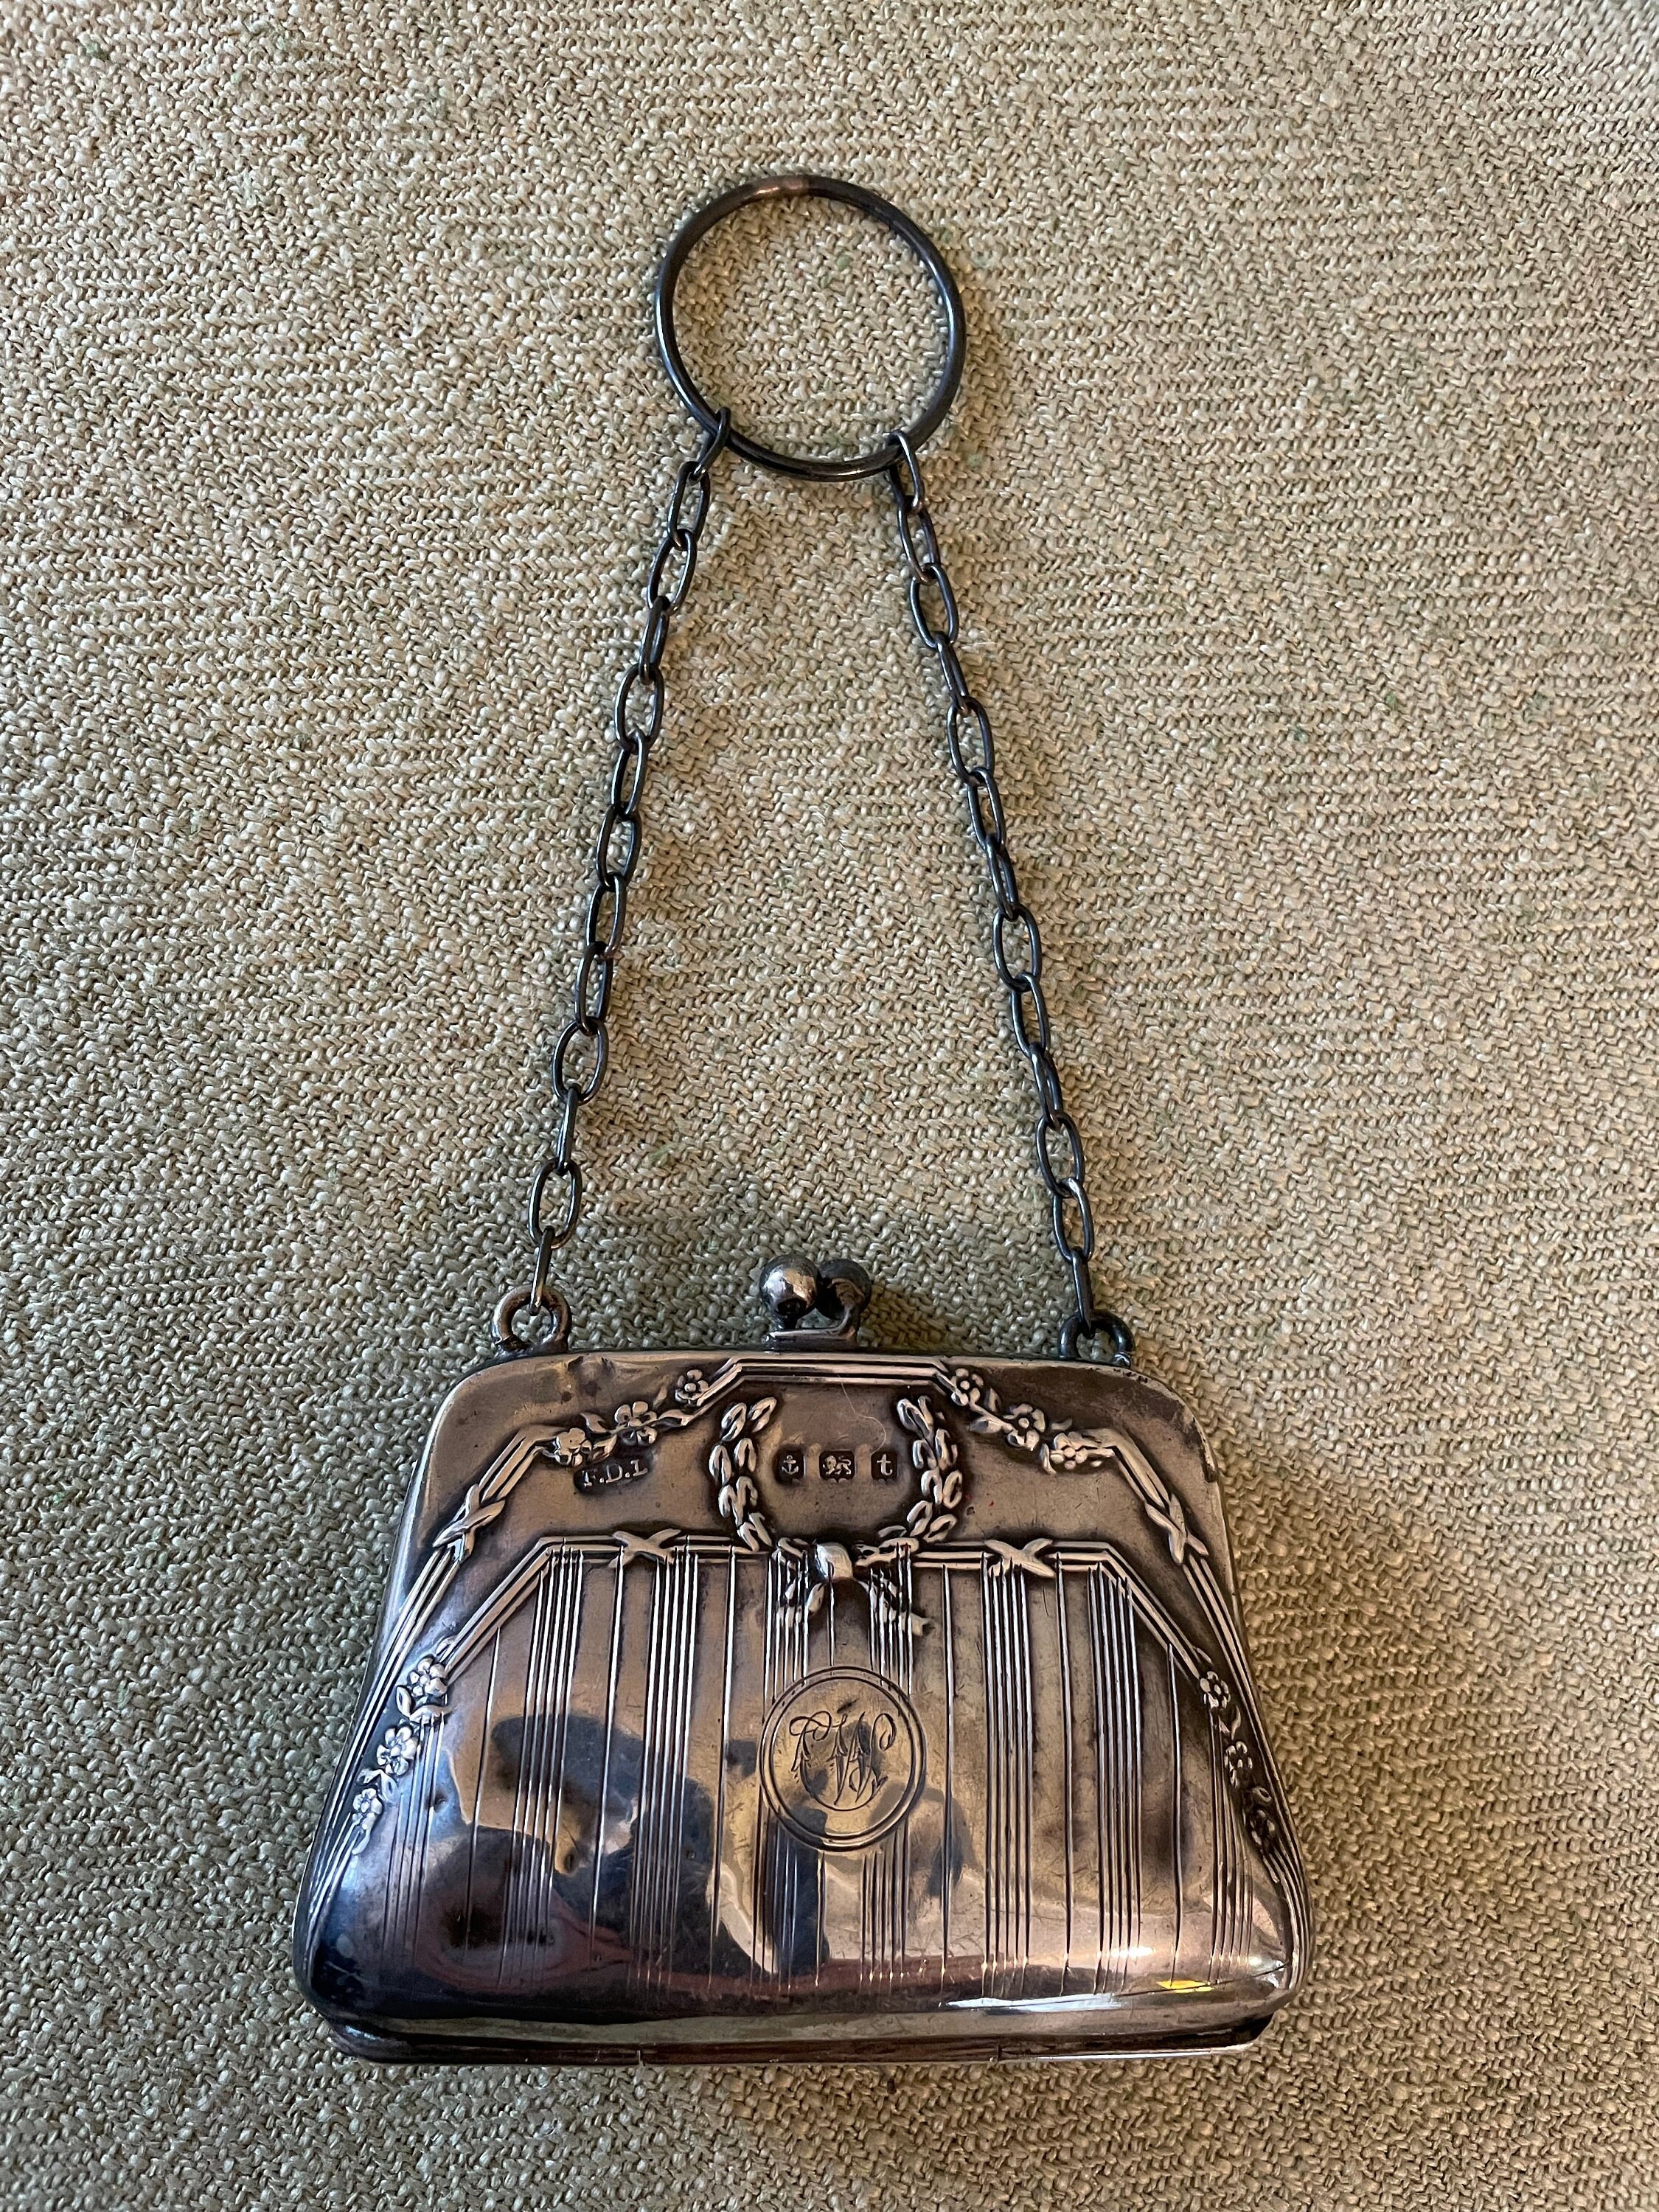 Edwardian silver purse - Gem